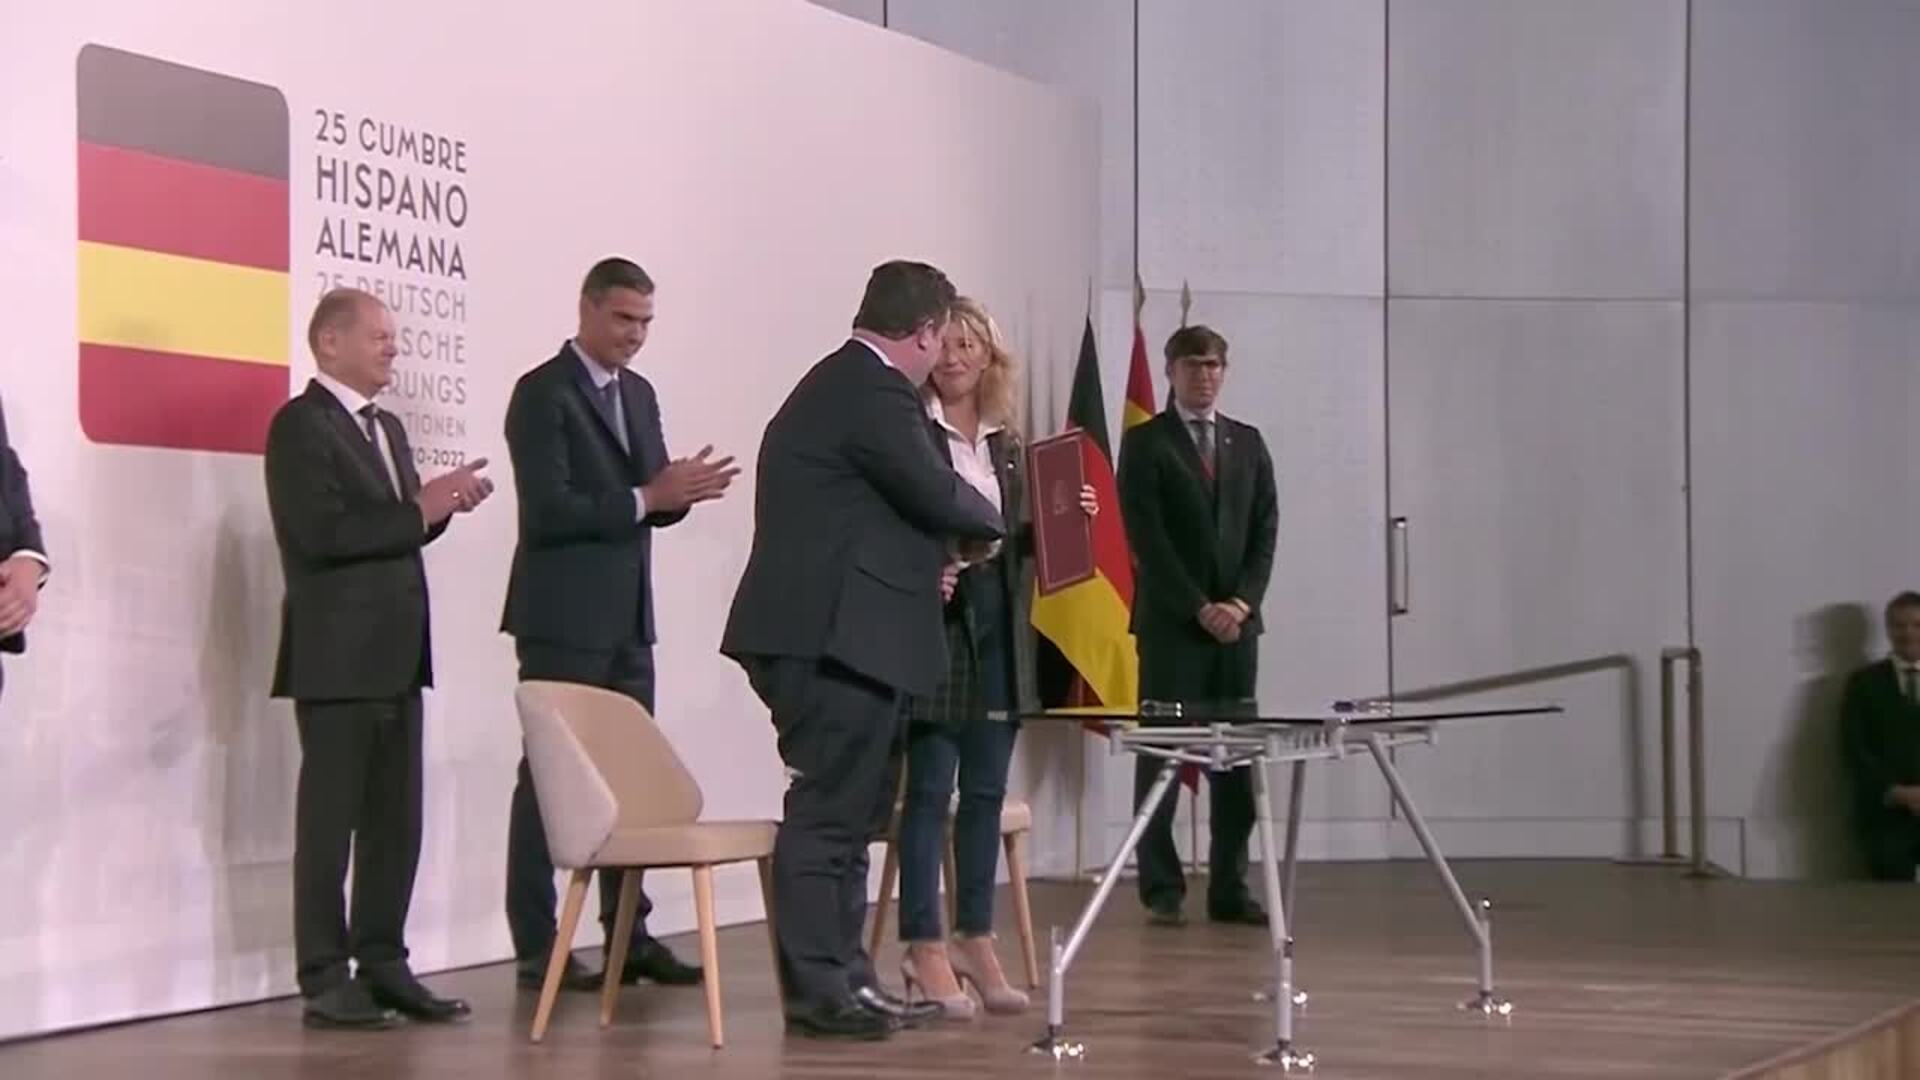 La cumbre hispano-alemana concluye en A Coruña en un clima de "sintonía" y acuerdos